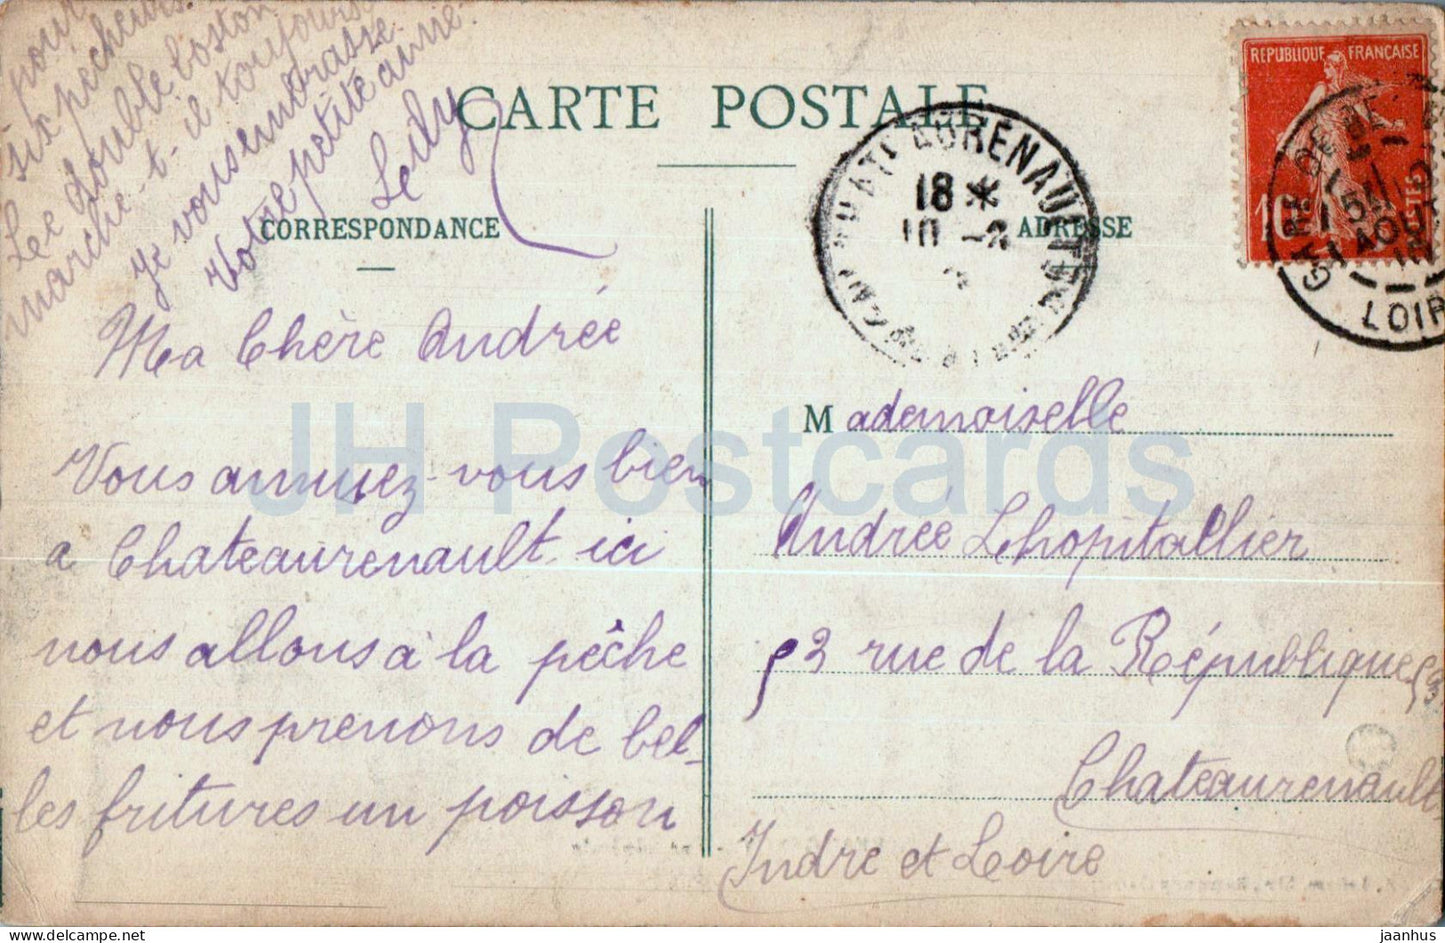 Beaugency - Vue Generale - bridge - old postcard - 1910 - France - used